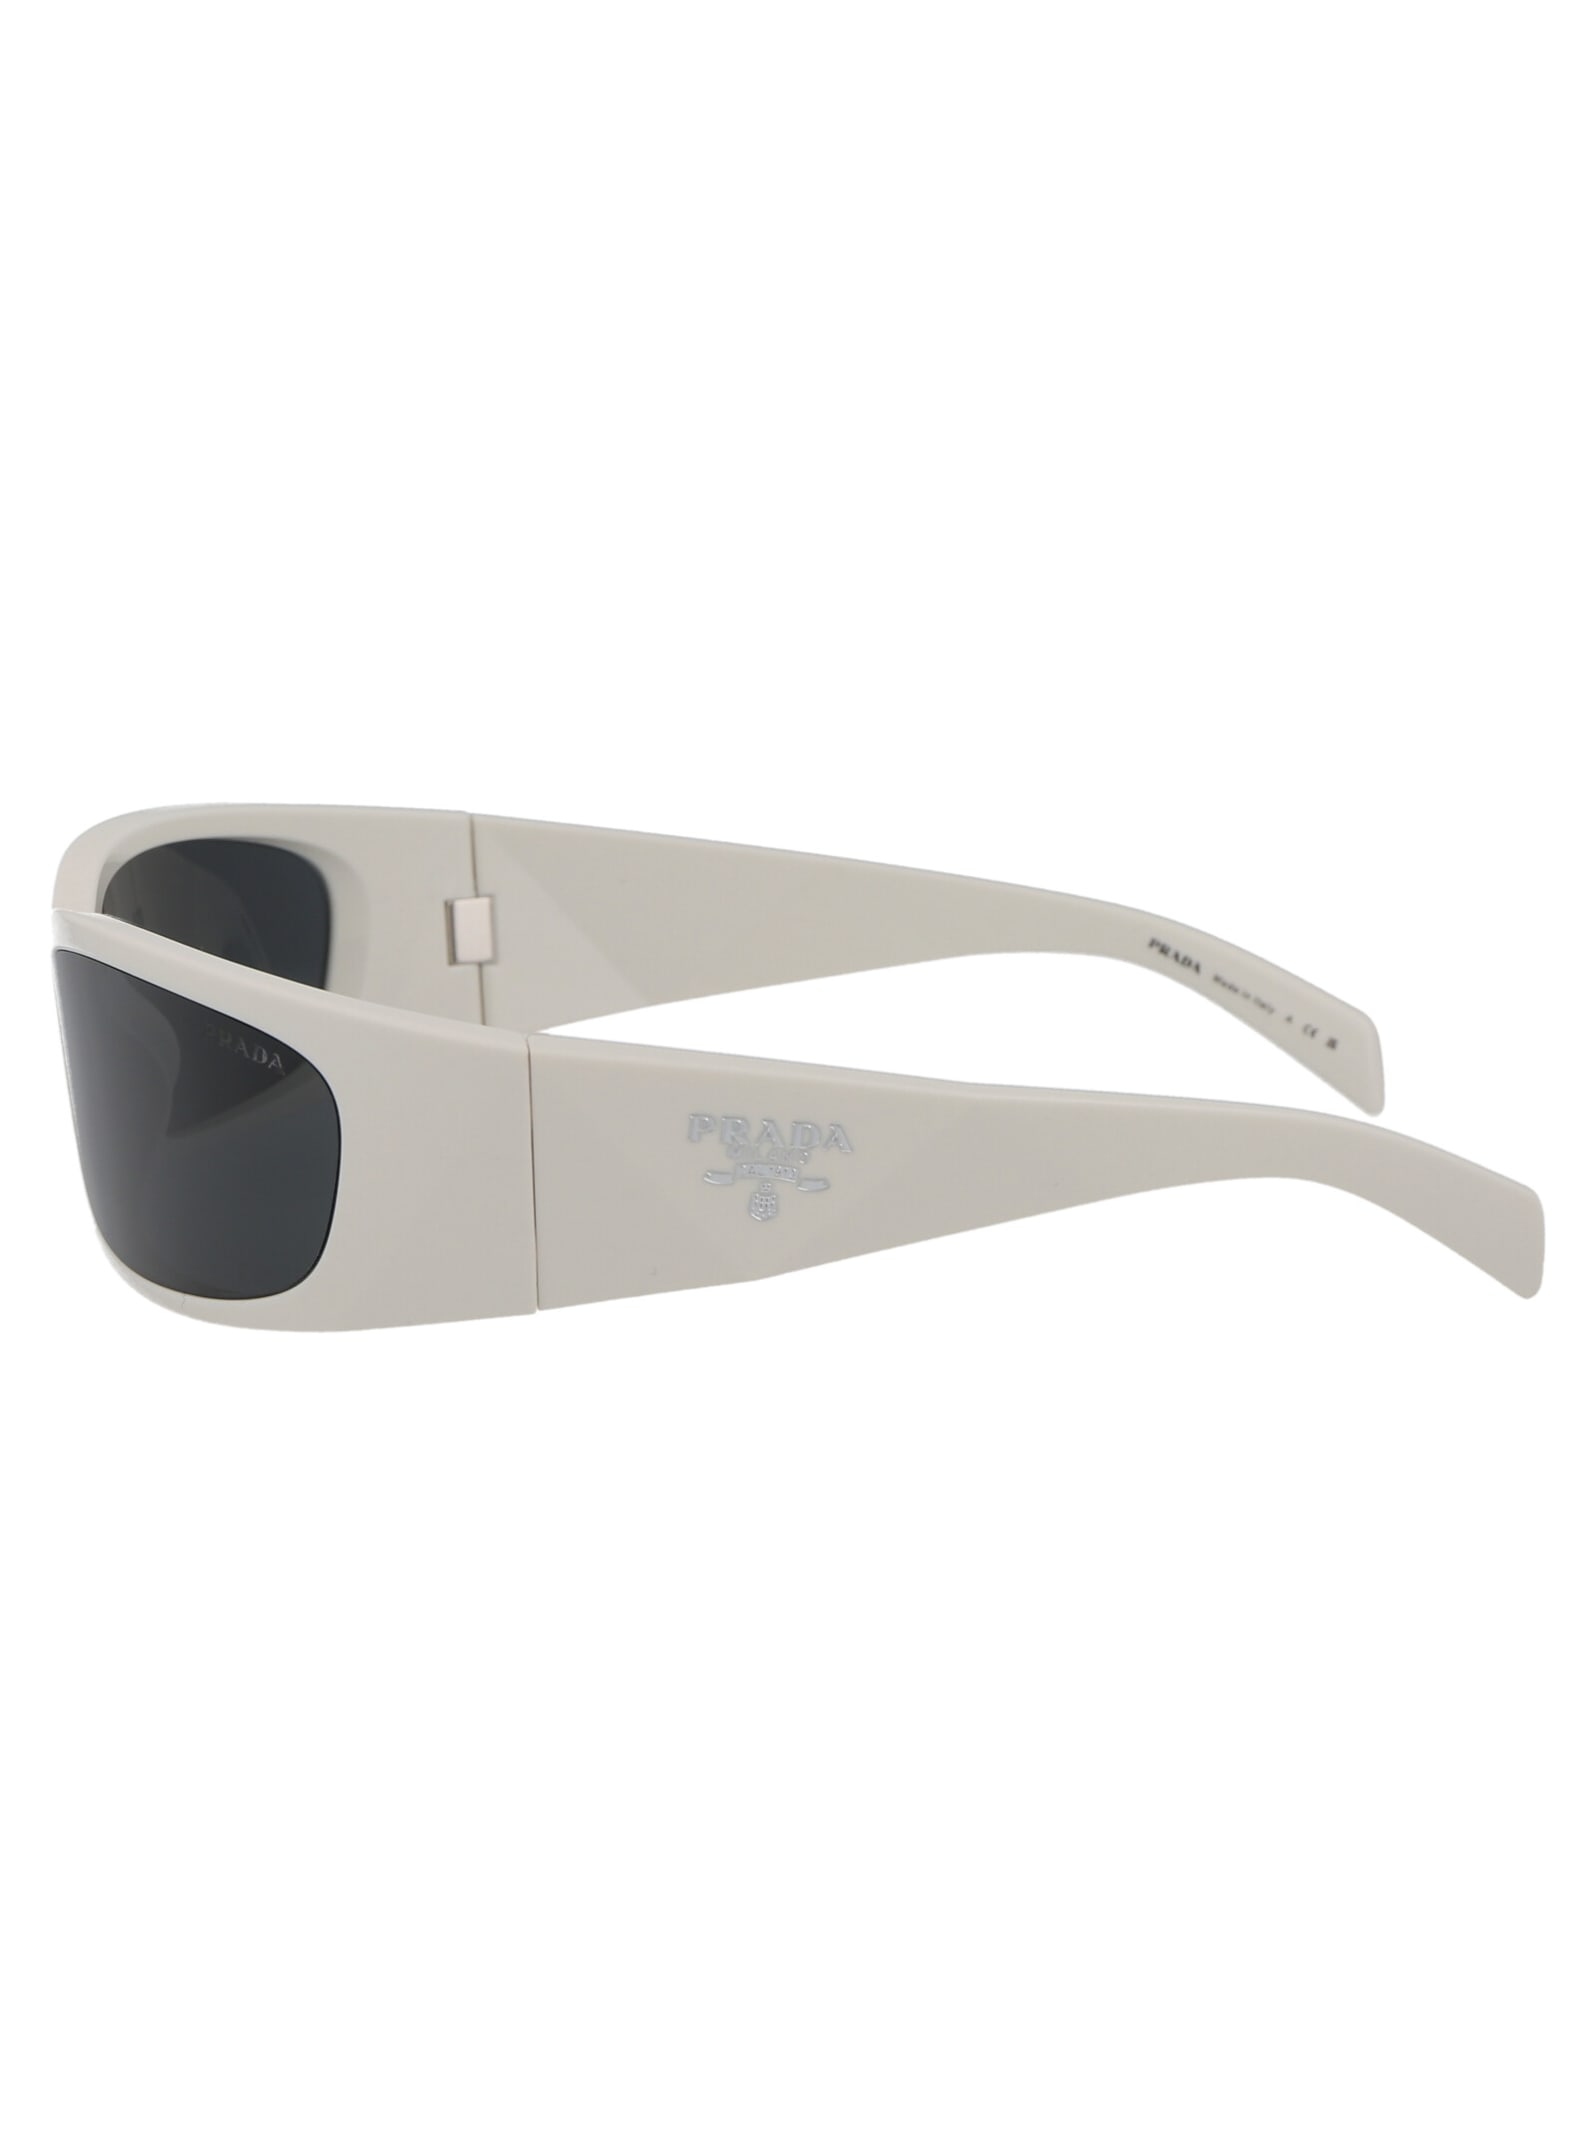 Shop Prada 0pr A19s Sunglasses In 1425s0 Talc